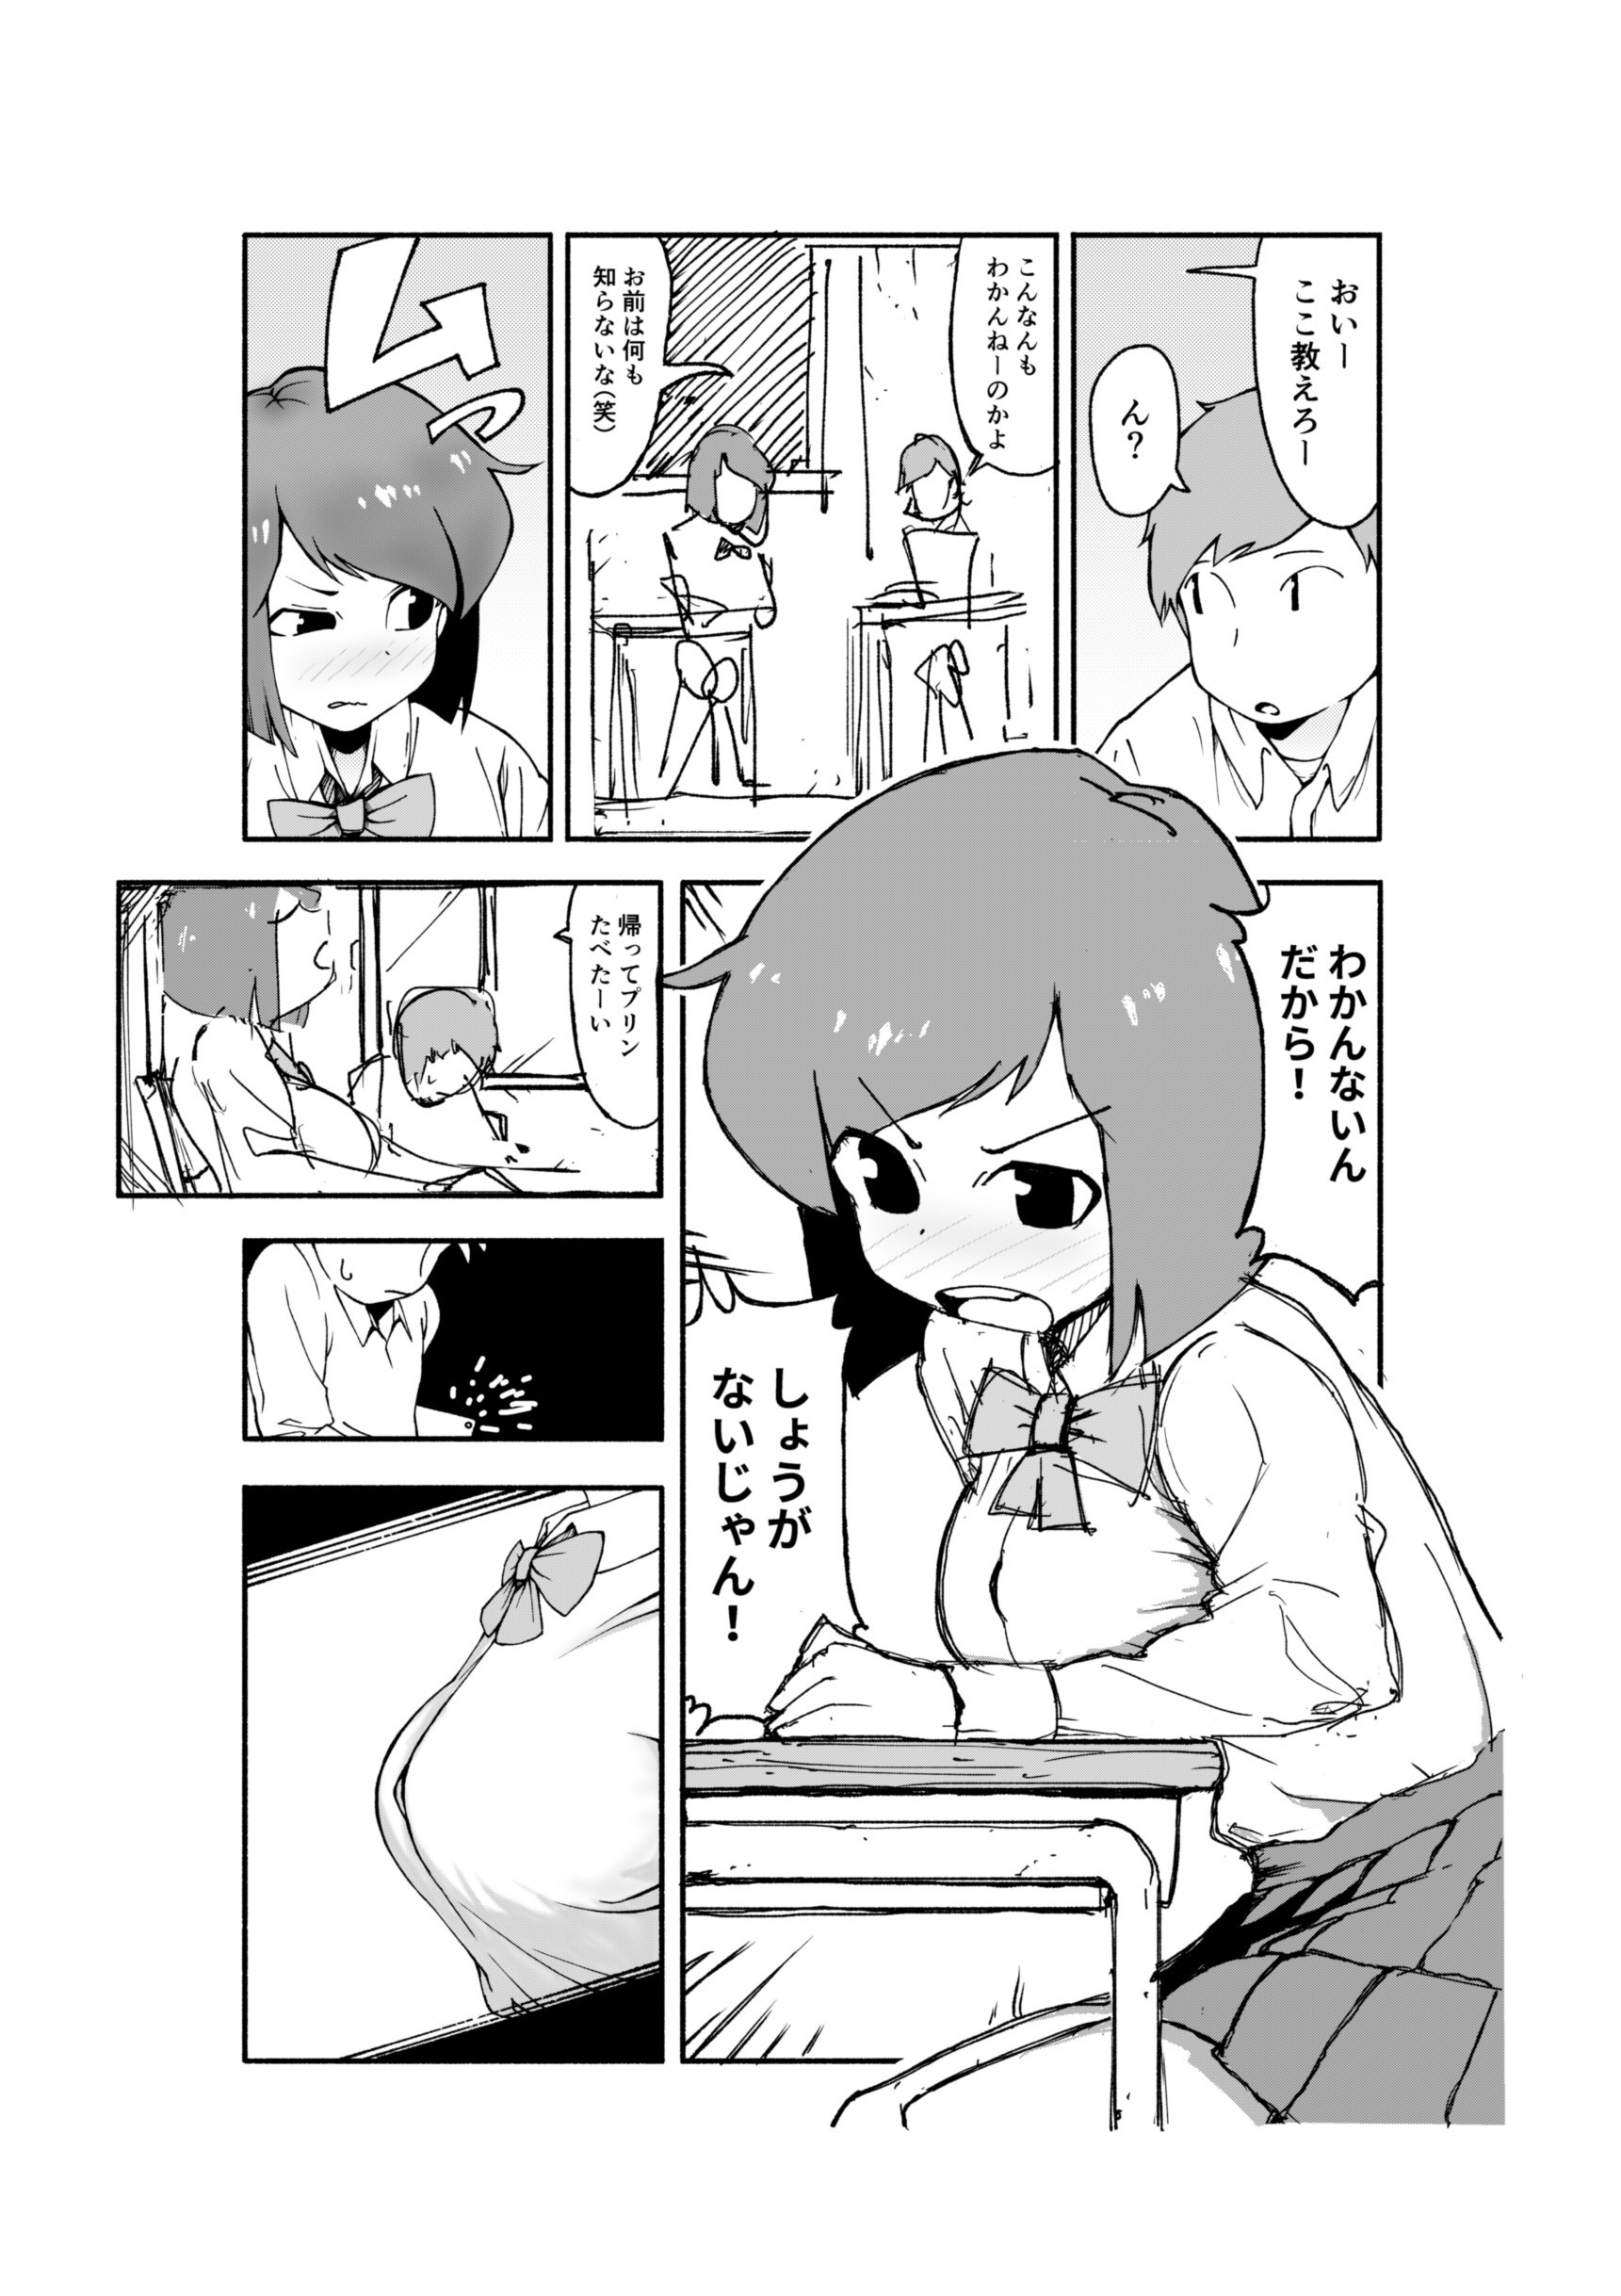 【朗報】ワイ童貞エロ漫画家志望、ちょっぴりエッチな漫画を描いてしまうw